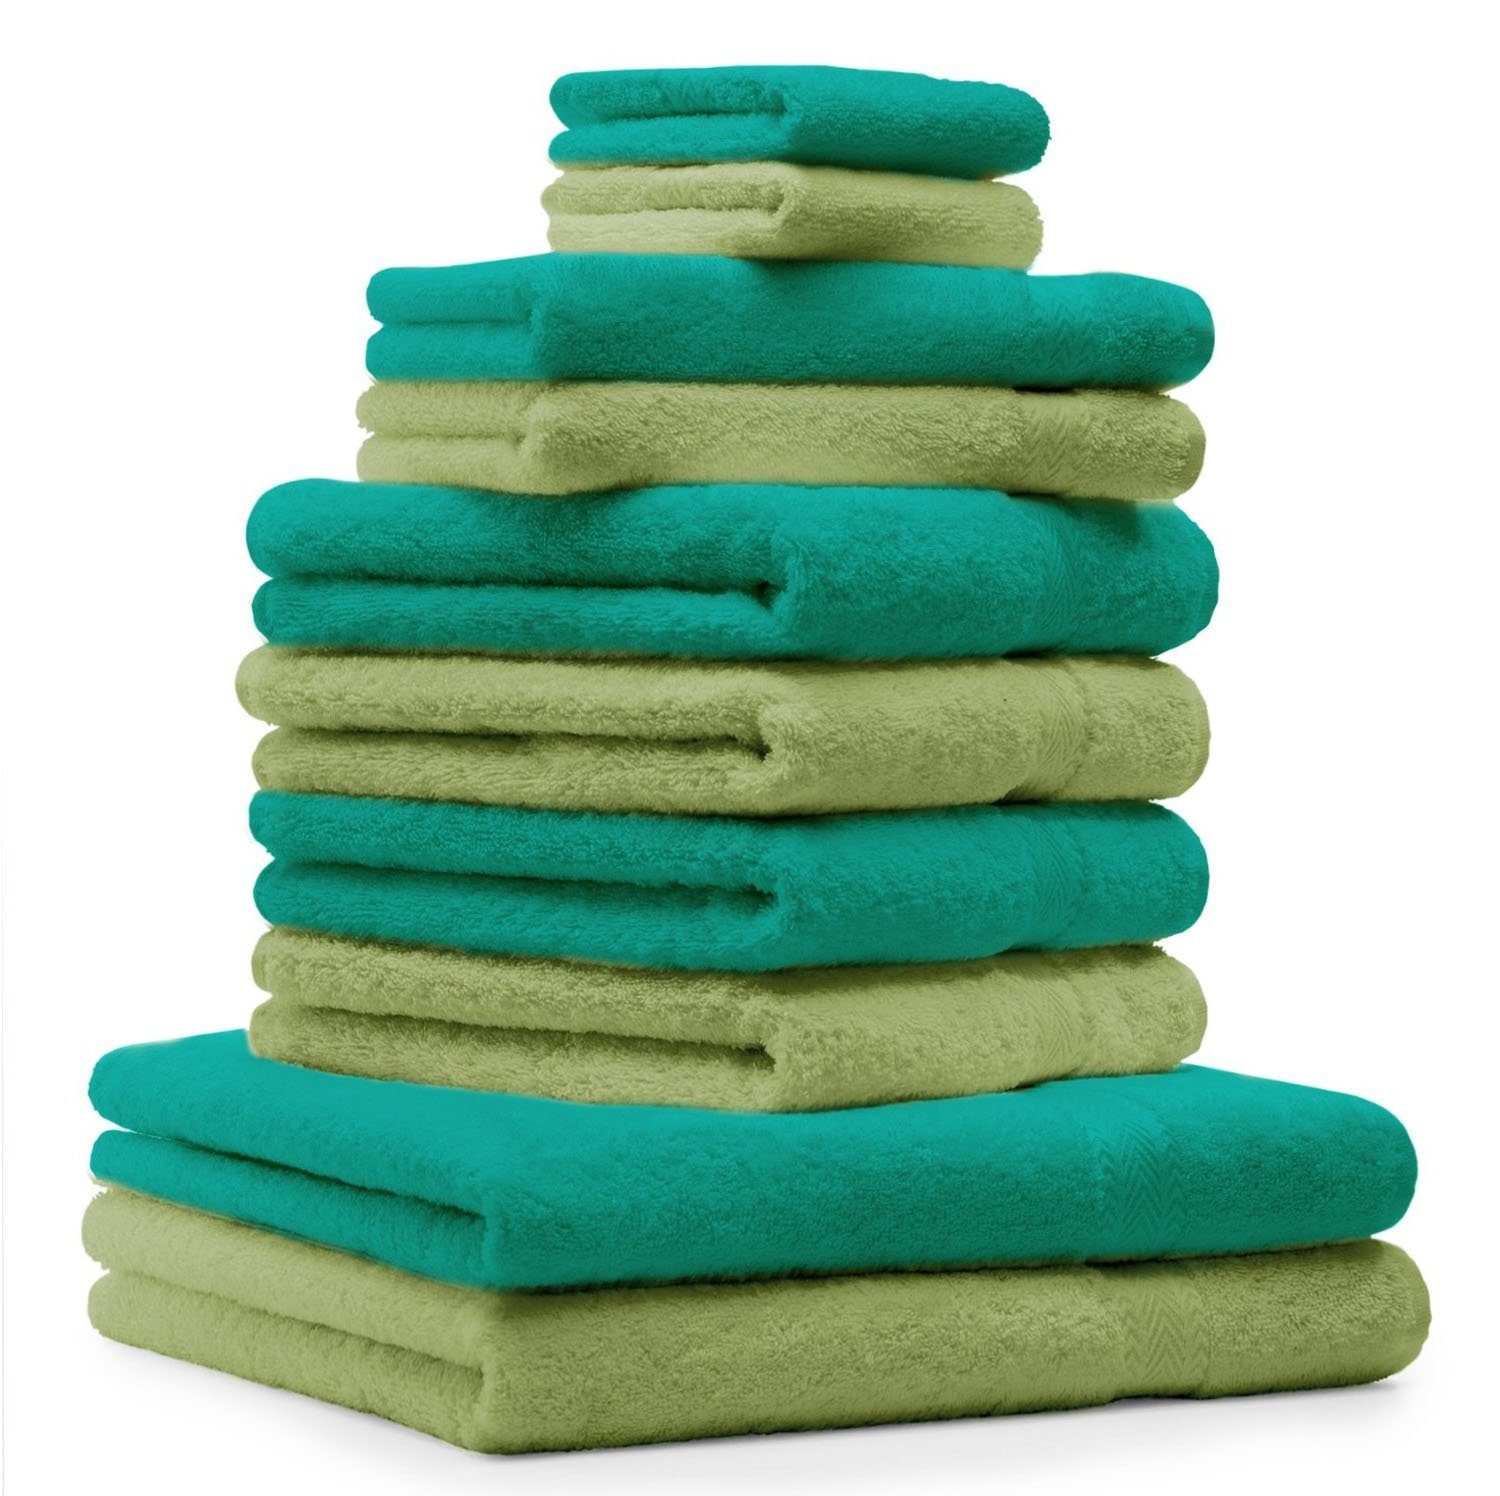 Betz Handtuch Set 10-TLG. Handtuch-Set Classic Farbe apfelgrün und smaragdgrün, 100% Baumwolle